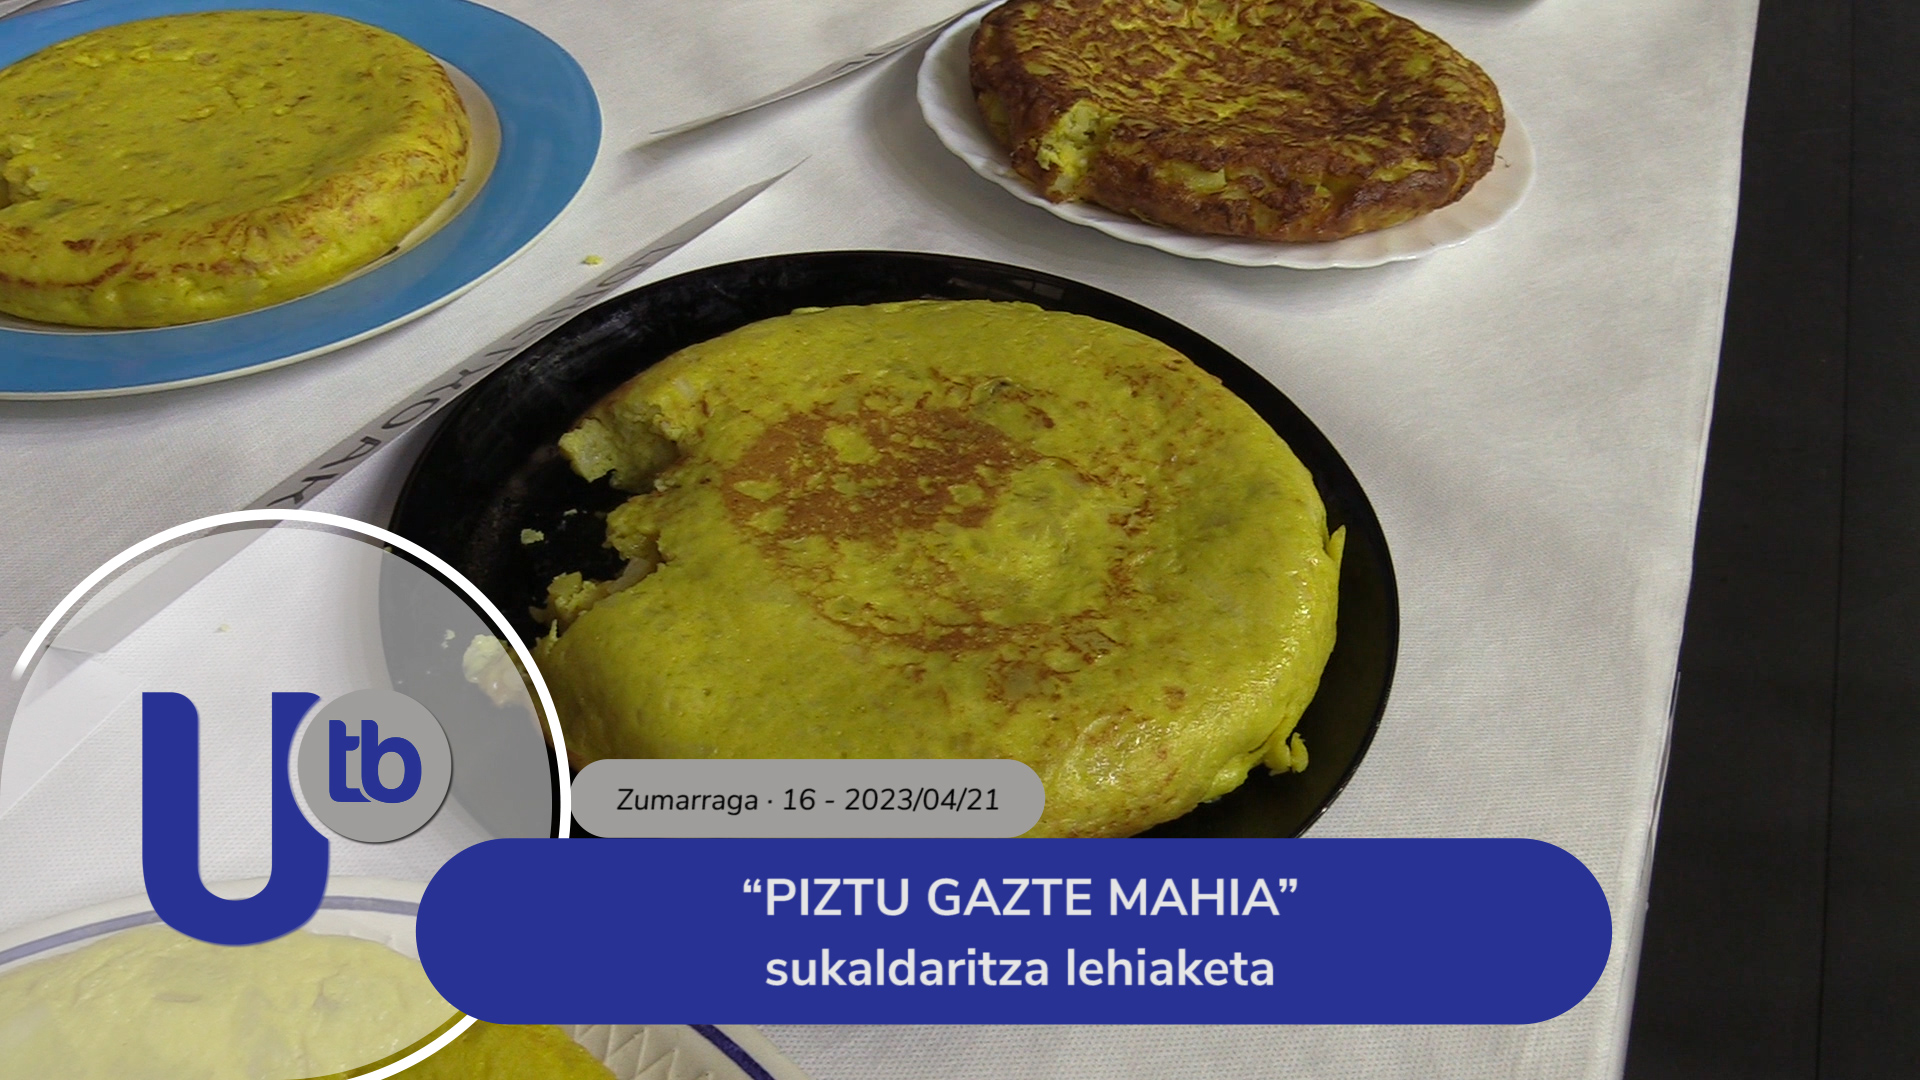 Concurso de cocina “PIZTU GAZTE MAHIA” / “PIZTU GAZTE MAHIA” sukaldaritza lehiaketa